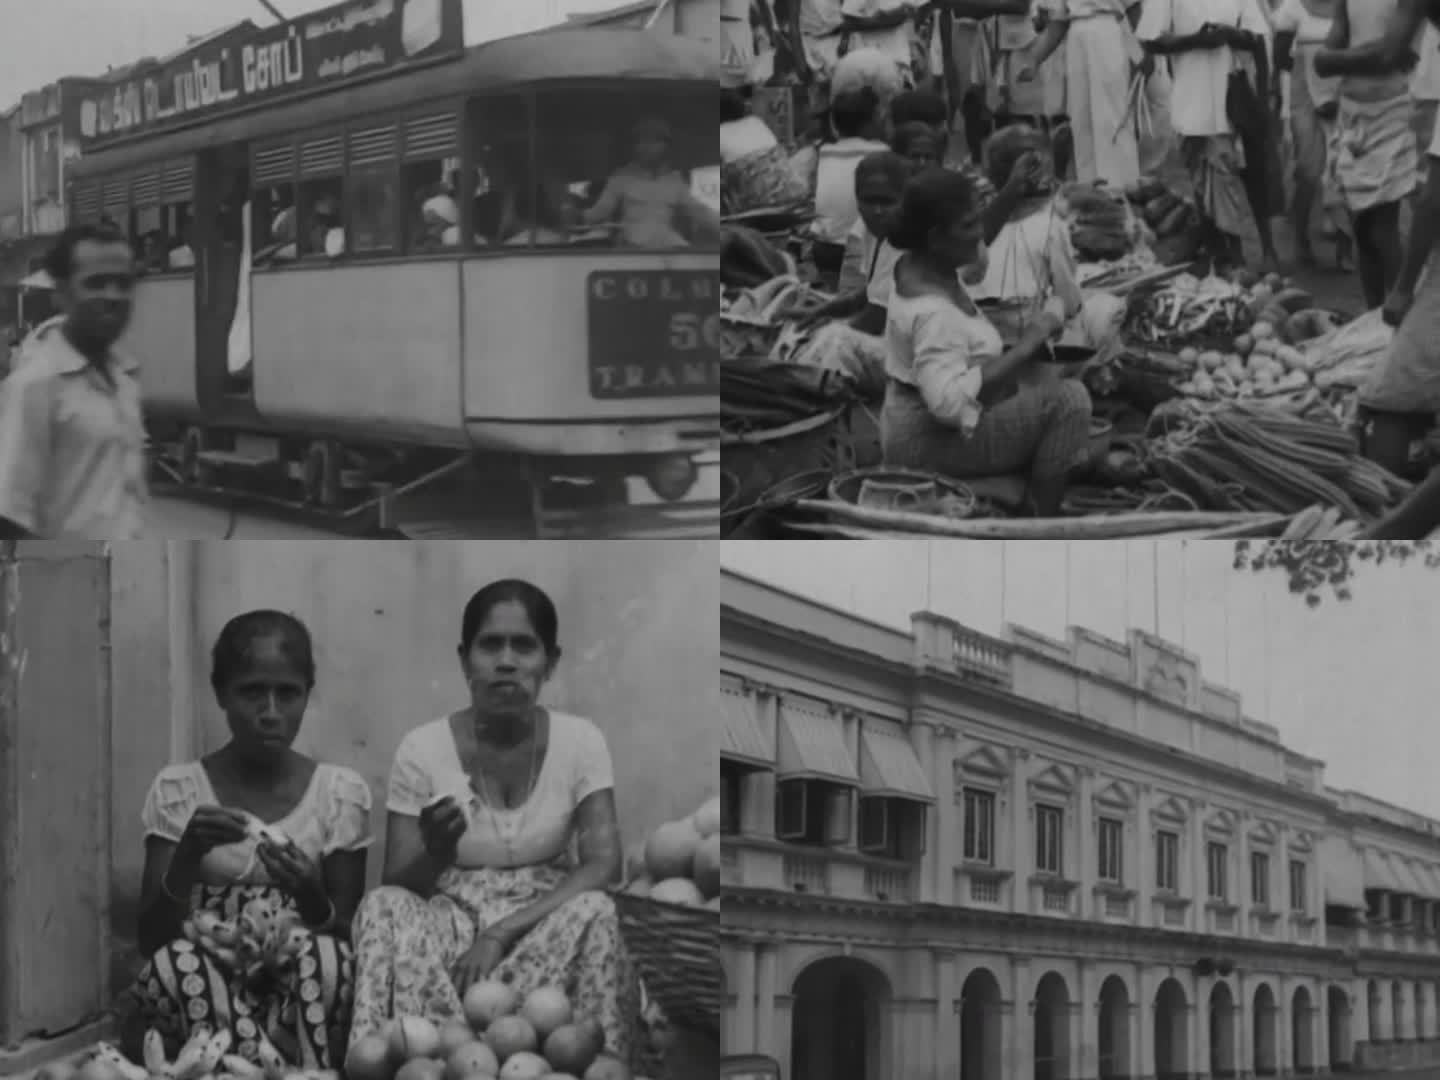 50年代印度街景 上世纪印度